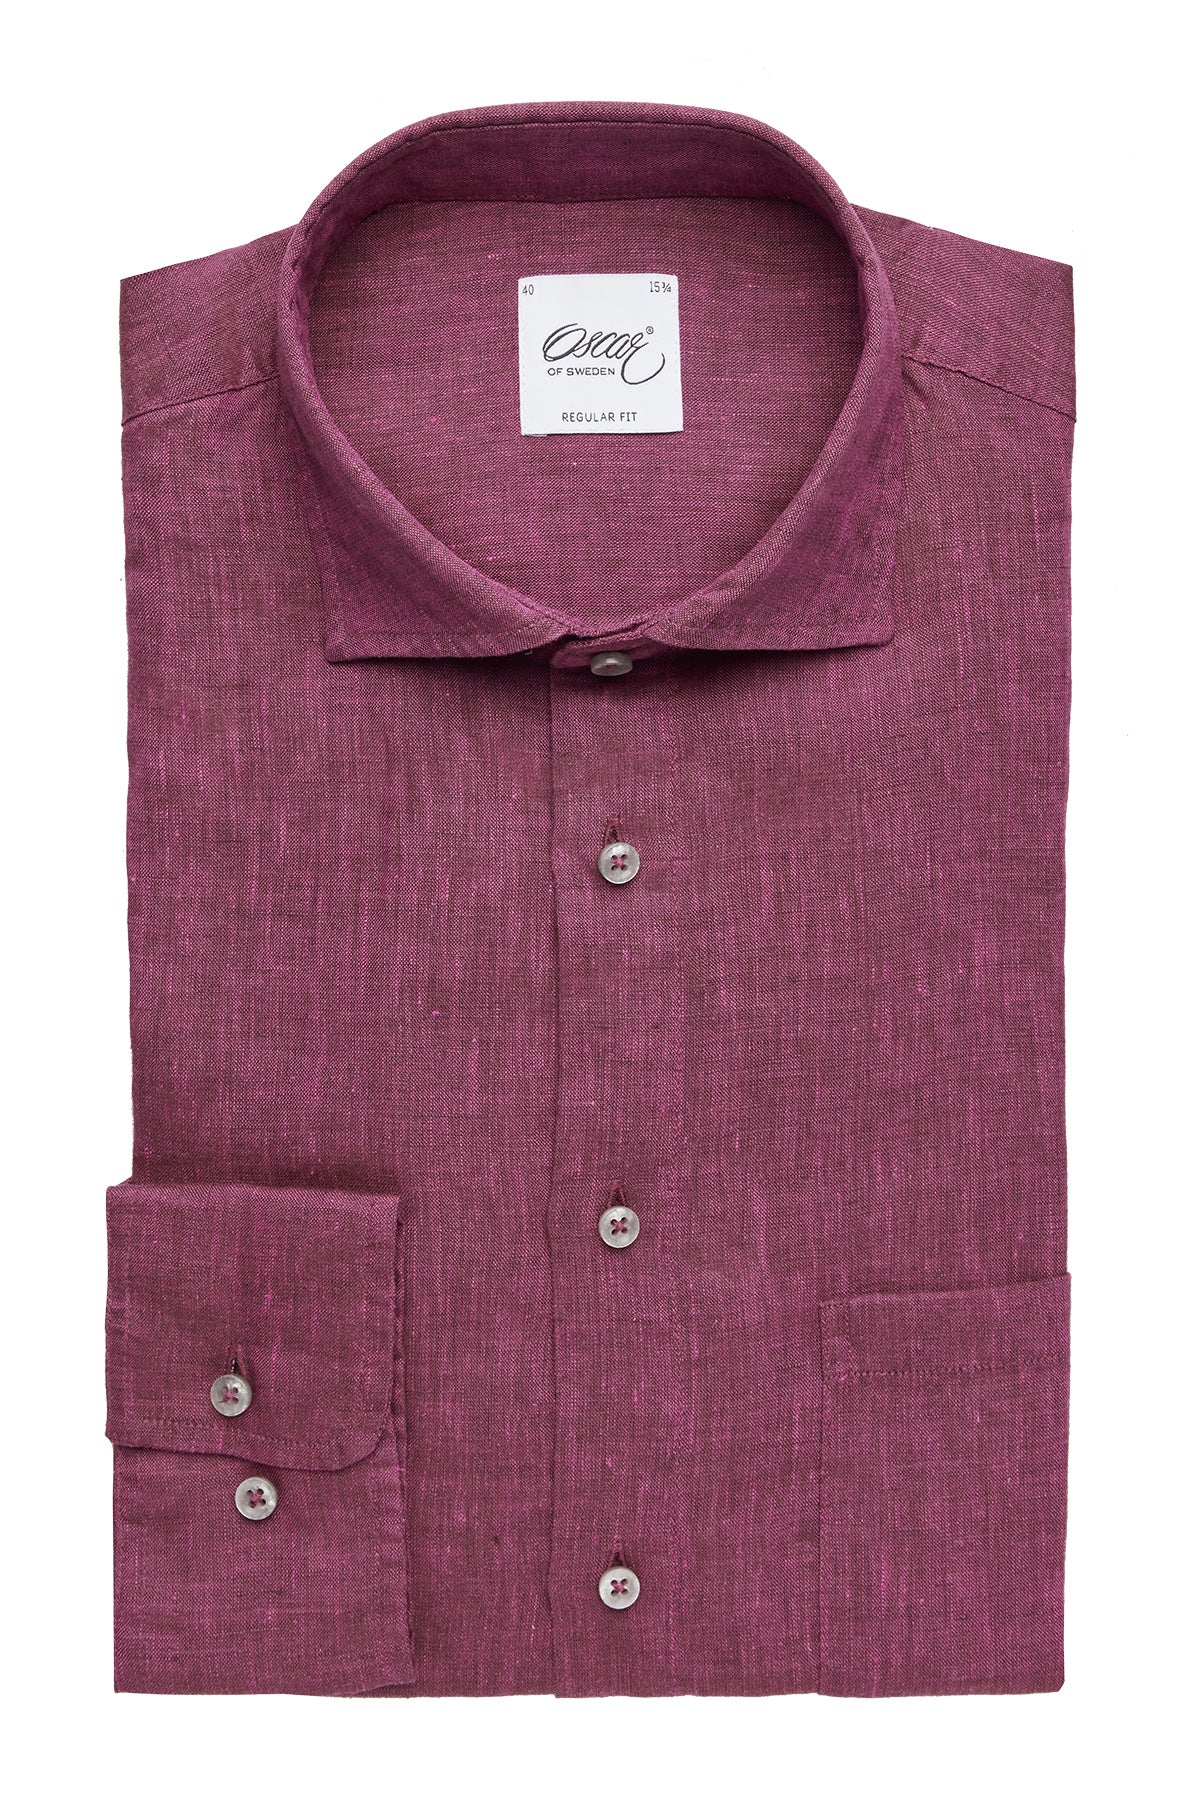 Burgundy linen regular fit shirt